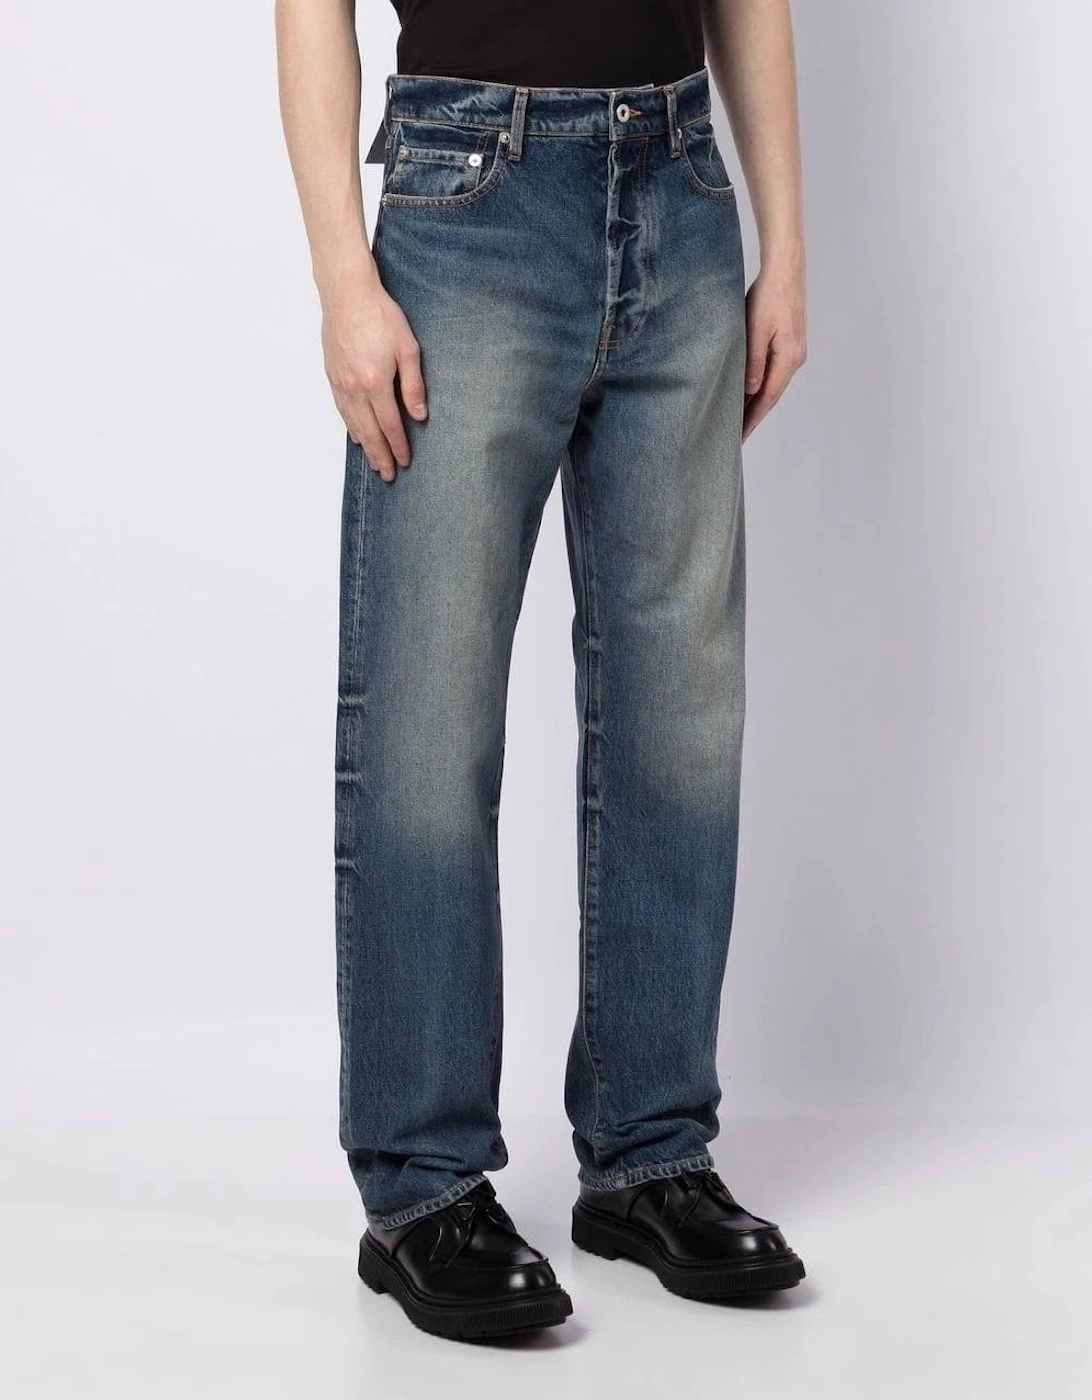 ASAGAO Denim Jeans, 6 of 5